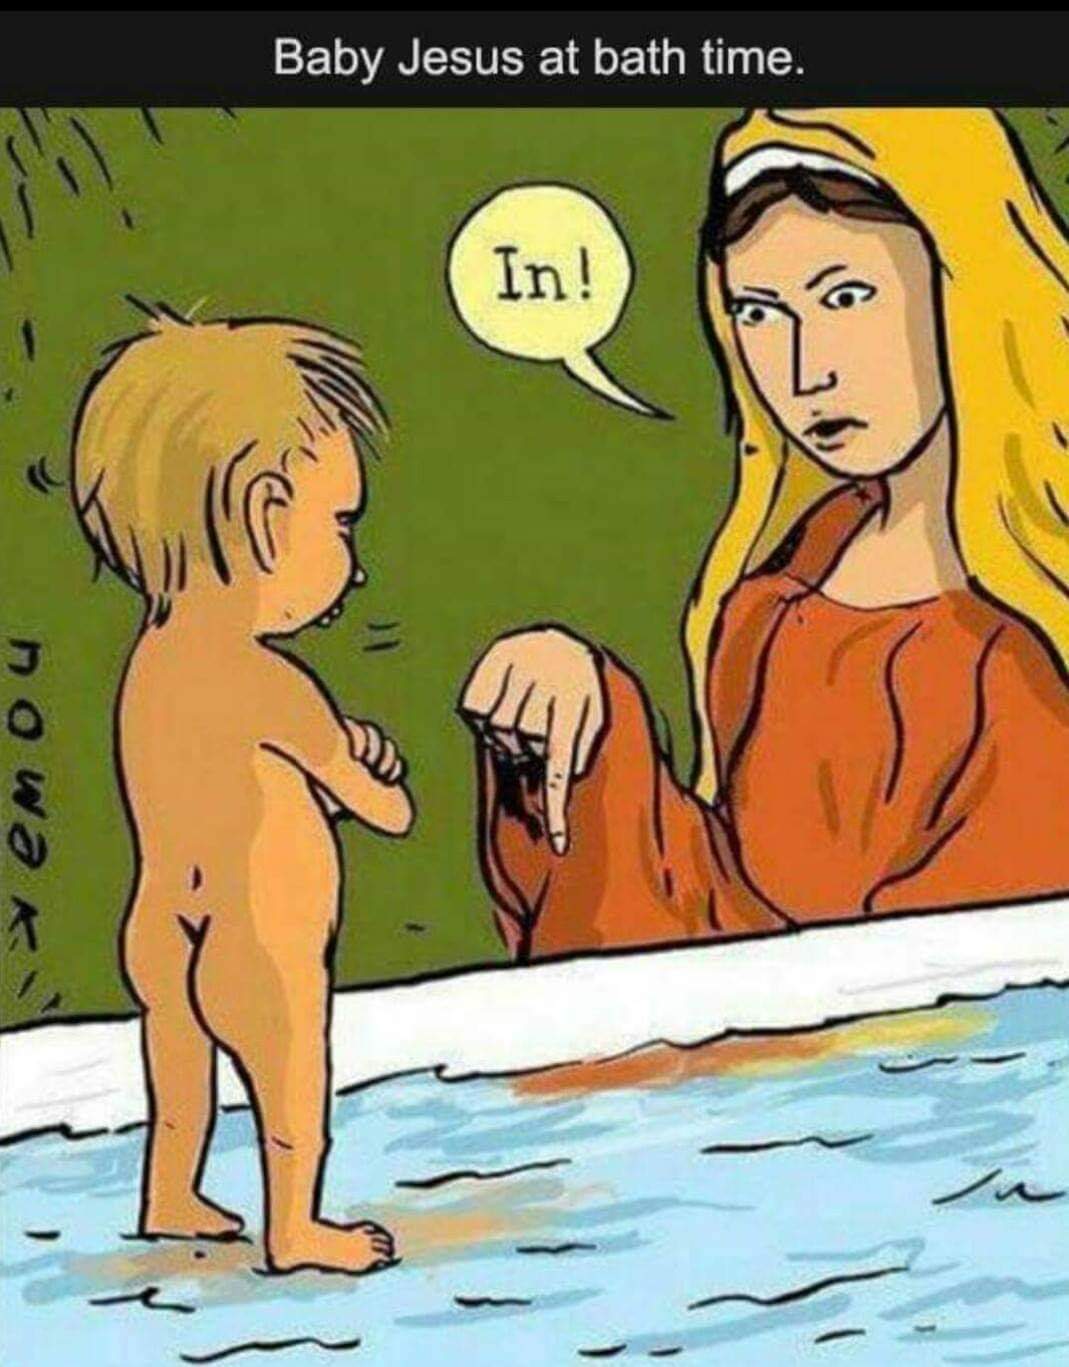 Baby Jesus gets a bath.